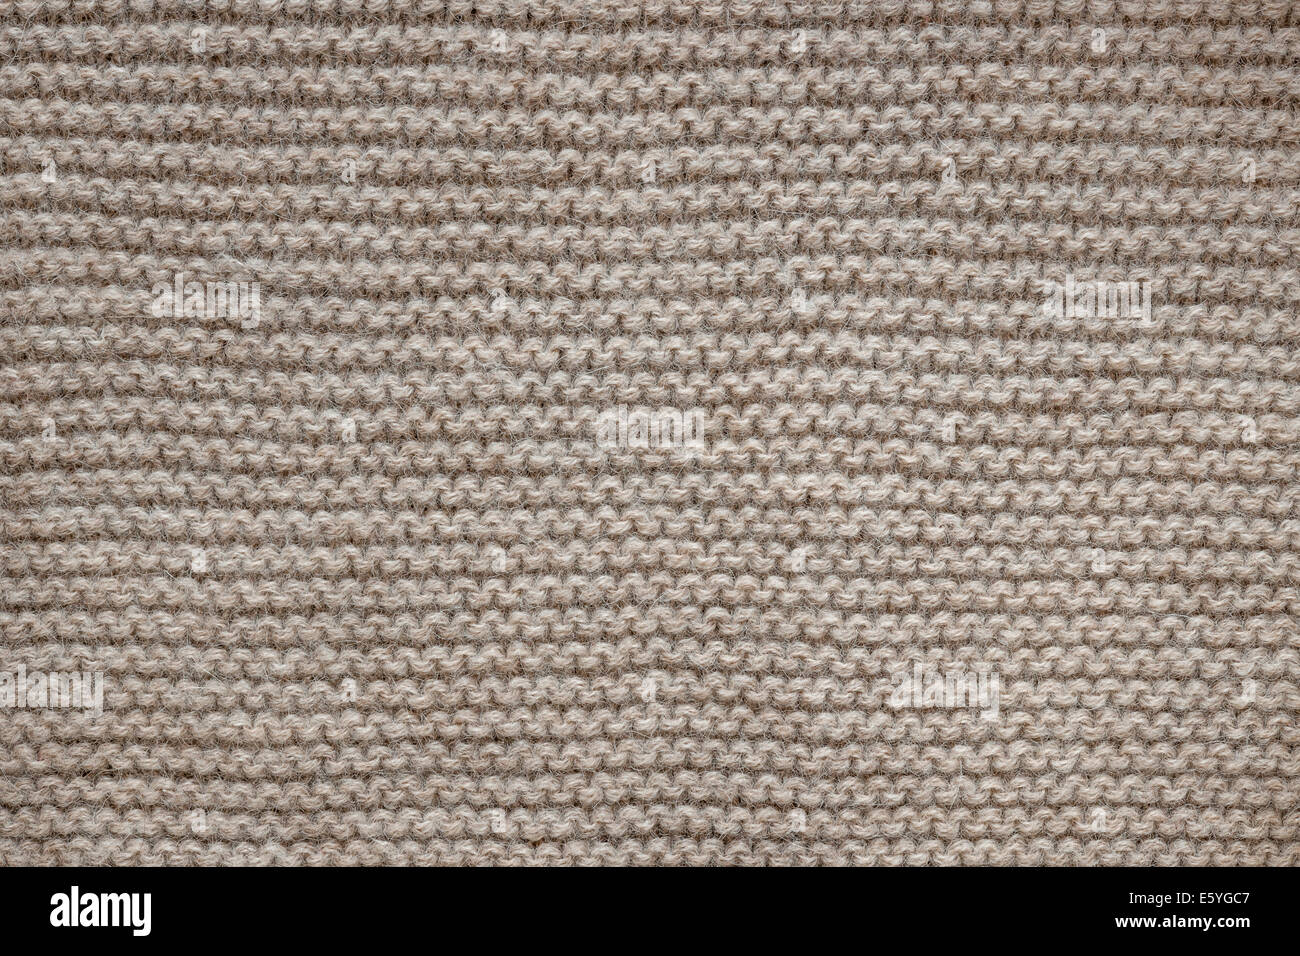 Tessitura a maglia di non tinta marrone naturale lana tessuto a maglia con garter stitch pattern come sfondo Foto Stock